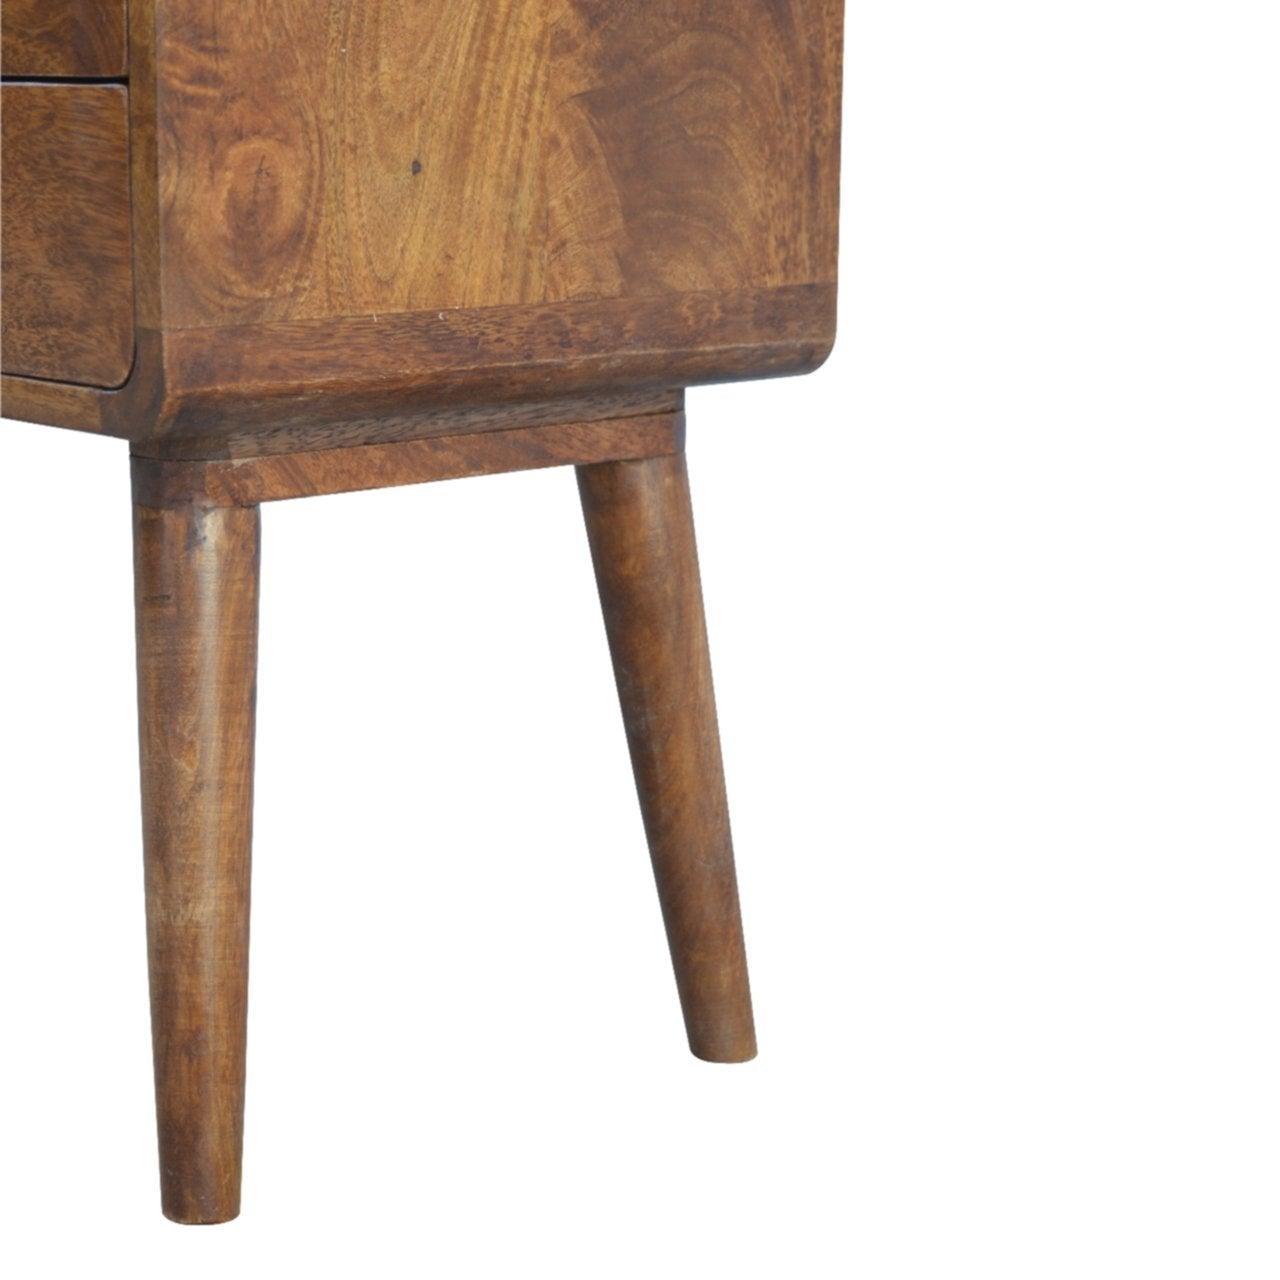 Curved chestnut bedside table - crimblefest furniture - image 6